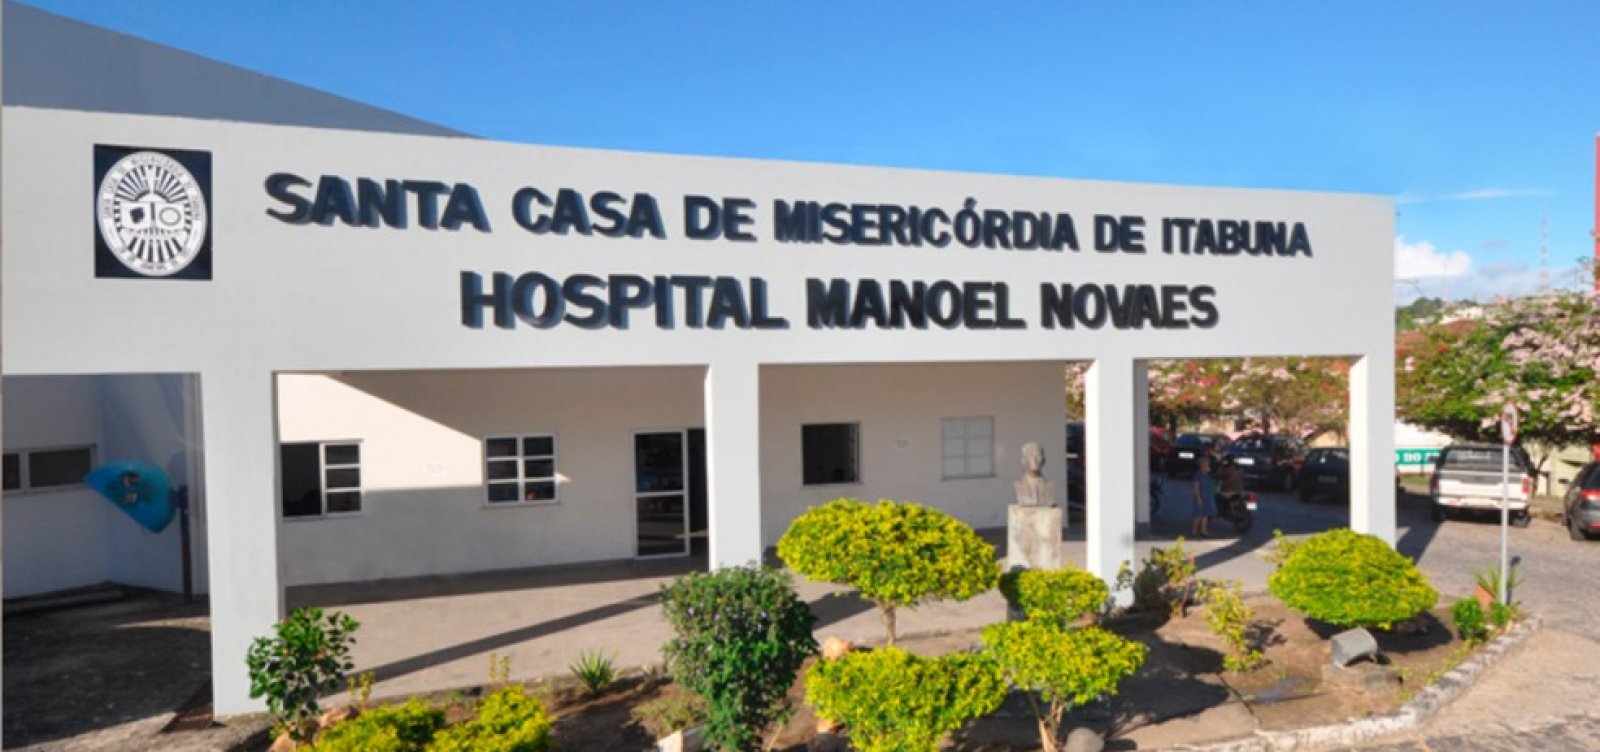 Policia investiga troca de corpos de bebês em hospital de Itabuna 